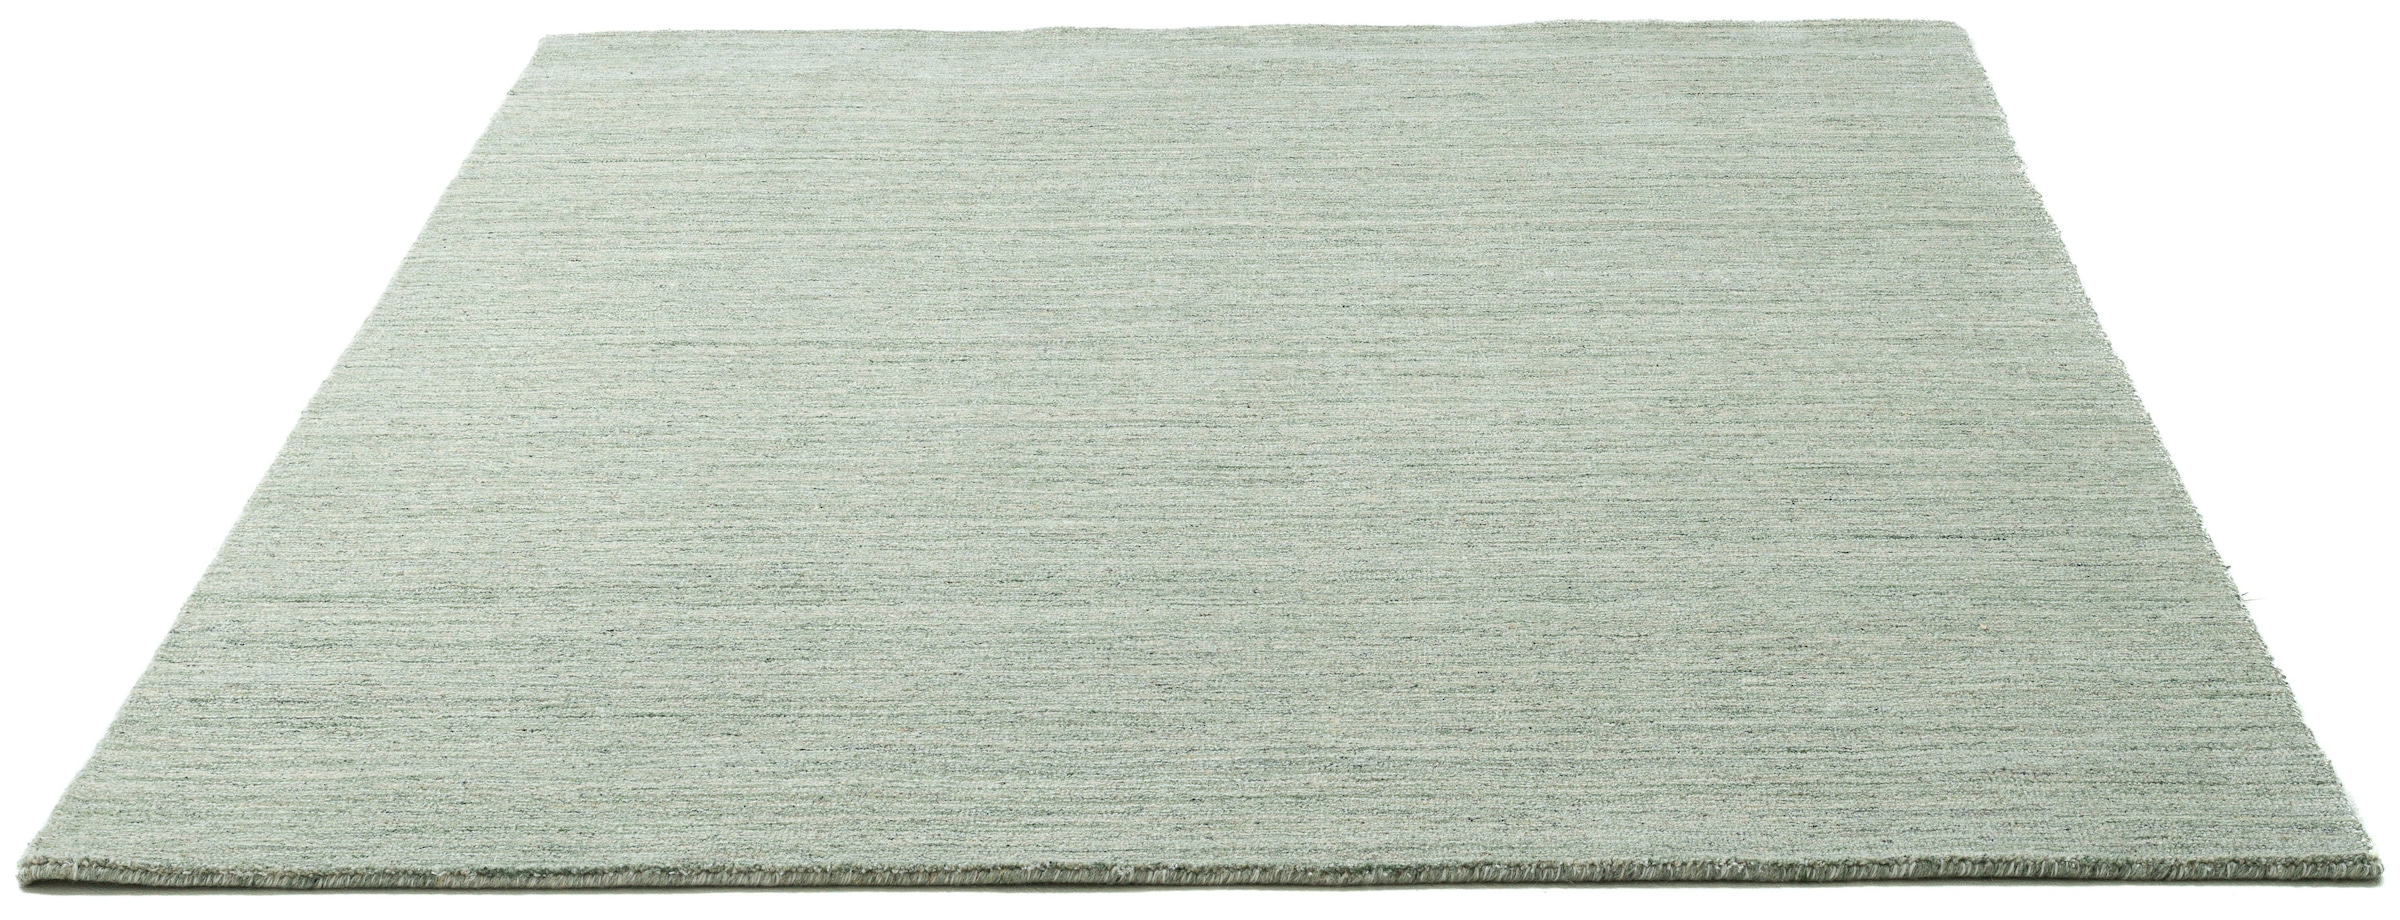 Teppich »San Diego«, rechteckig, handgewebt, 60% Wolle, Knüpfoptik, meliert, leichter...